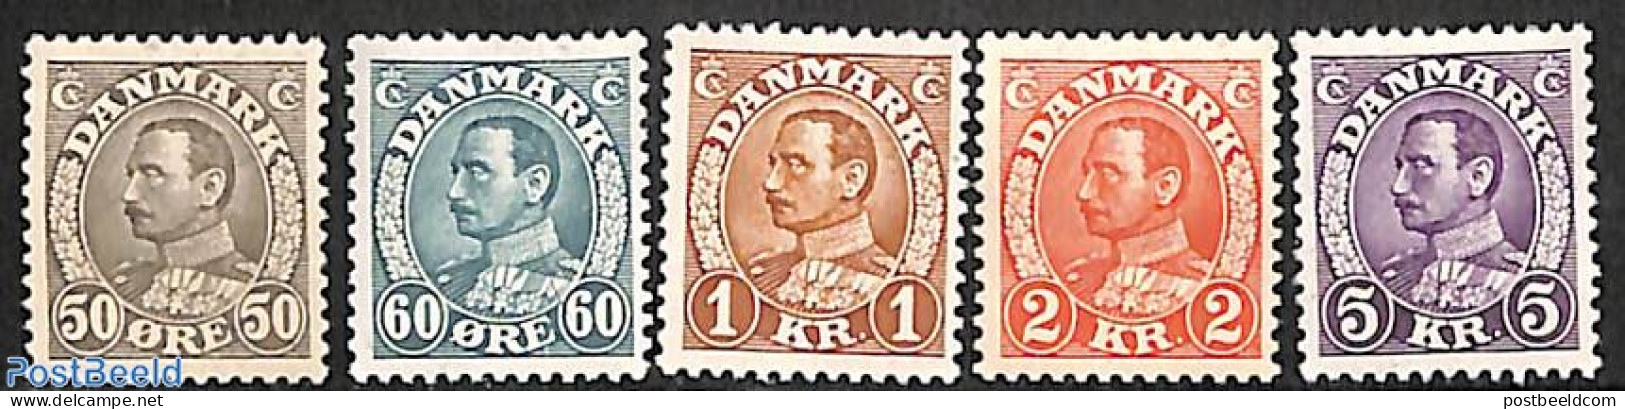 Denmark 1934 Definitives 5v, Mint NH - Unused Stamps